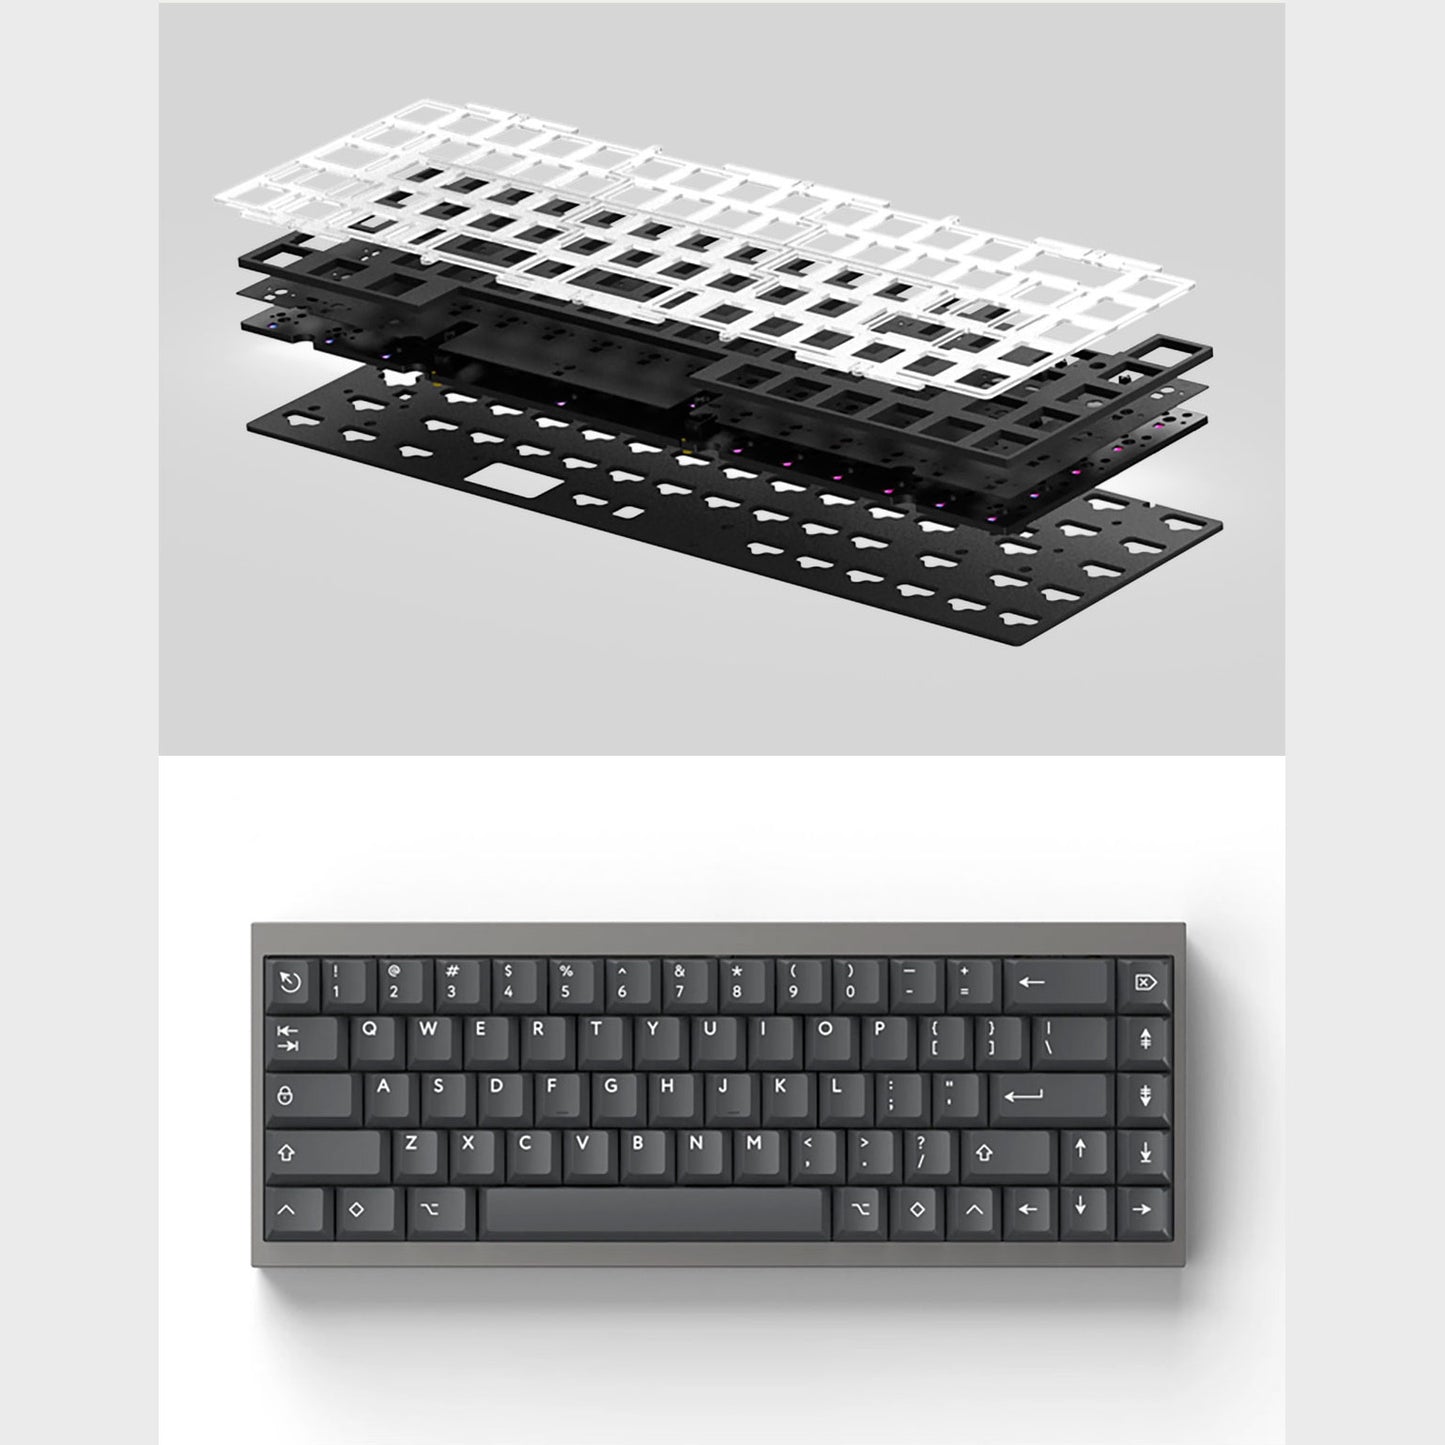 TOFU65 2.0 Aluminum Mechanical Keyboard Barebone